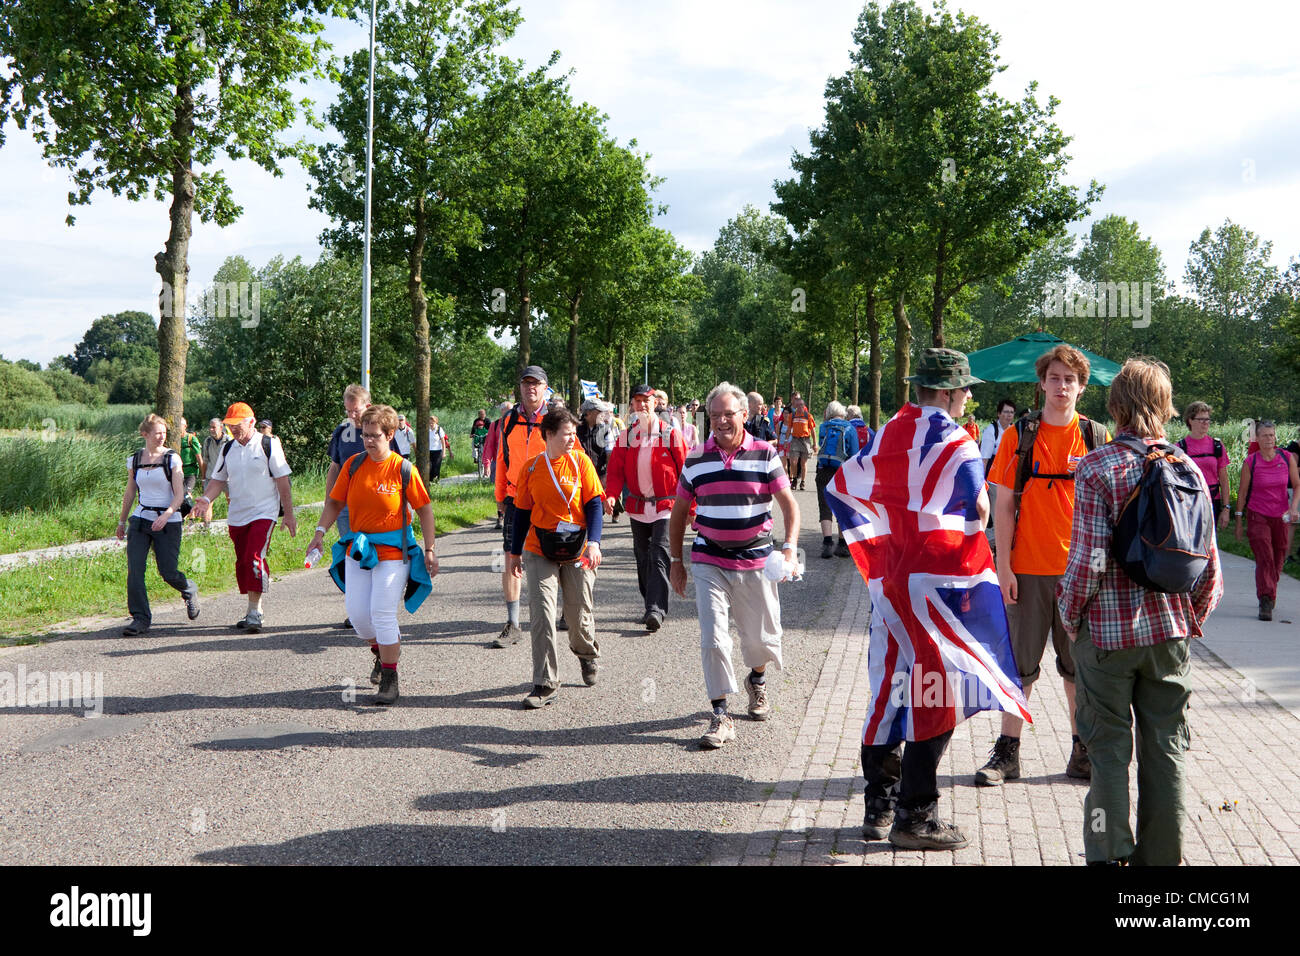 Wijchen, Países Bajos. El 18 de julio, 2012. Los concursantes británica en el Día Internacional de cuatro marchas Nijmegen tomar un descanso mientras pasa a través de Wijchen. Los cuatro días de desfiles, también conocido como Nimega Vierdaagse es el mayor acontecimiento en el mundo marchando. Es organizado cada año en Nimega en mediados de julio como medio de promover el deporte y el ejercicio. Los participantes caminan 30, 40 ó 50 kilómetros diarios, y sobre la terminación recibir una medalla (Vierdaagsekruis royally aprobado). Los participantes son en su mayoría civiles, pero también hay unos pocos miles de los participantes militares. Foto de stock